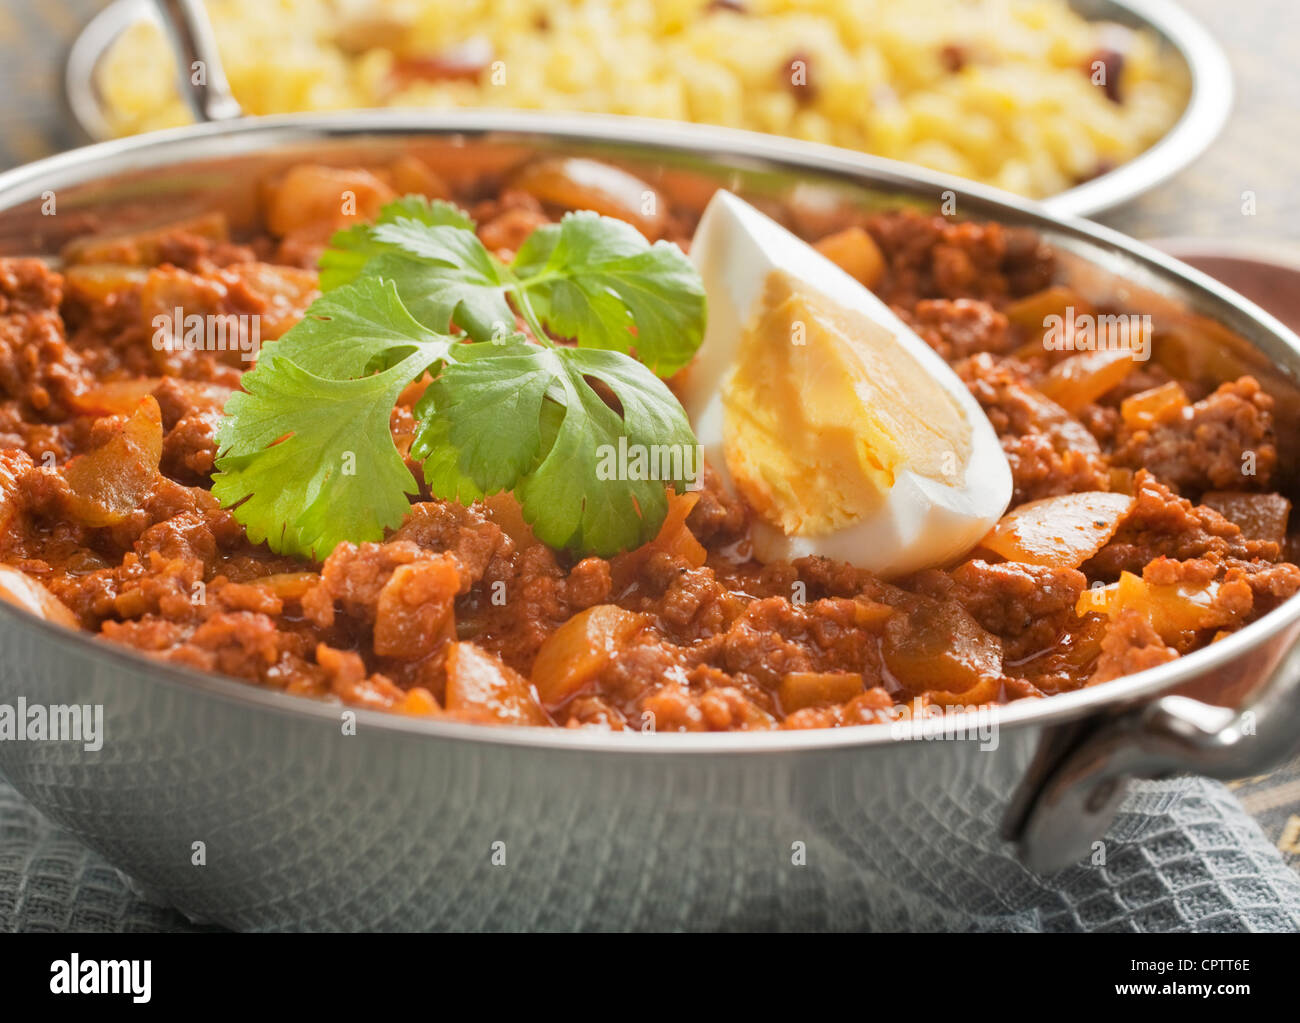 Boeuf keema curry à l'indienne, avec des œufs, dans un plat de Balti, garni de coriandre, avec du riz pilaf. Banque D'Images